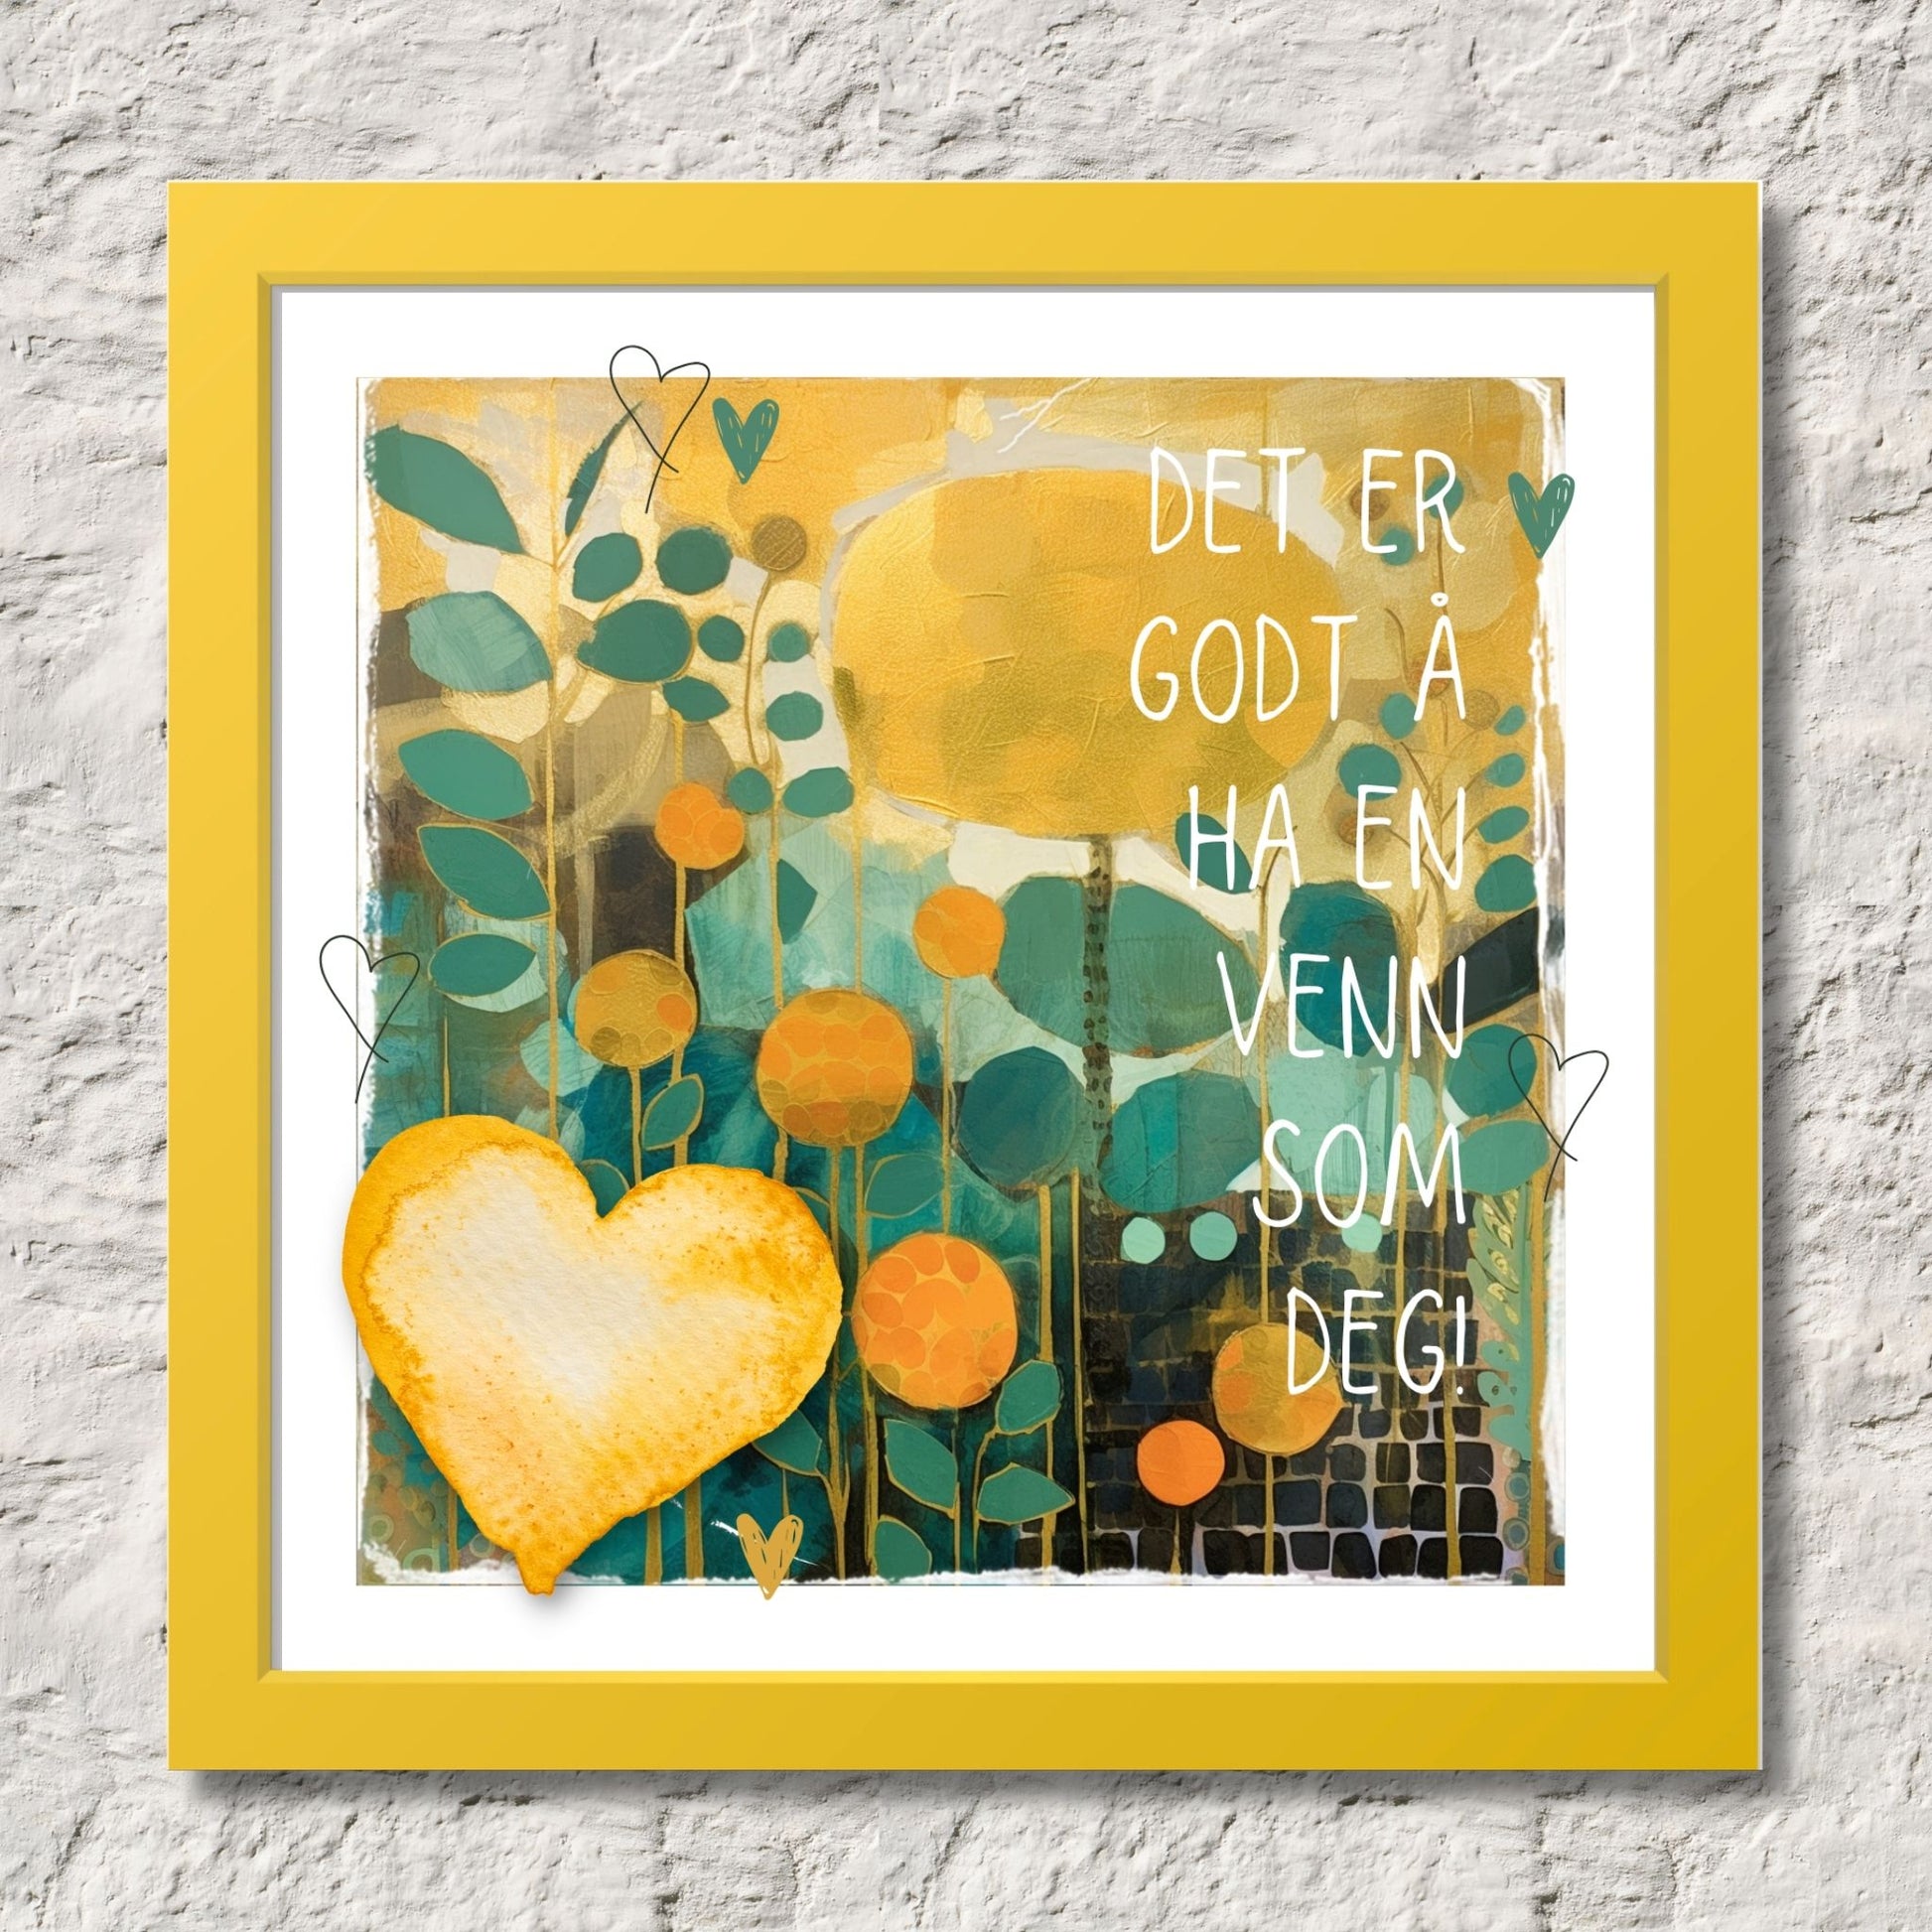 Plakat med lysegult hjerte og tekst "Det er godt å ha en venn som deg" - og et motiv med farger i grønn, gul og oransje. Med hvit kant på 1,5 cm. Illustrasjon viser plakat i gul ramme.